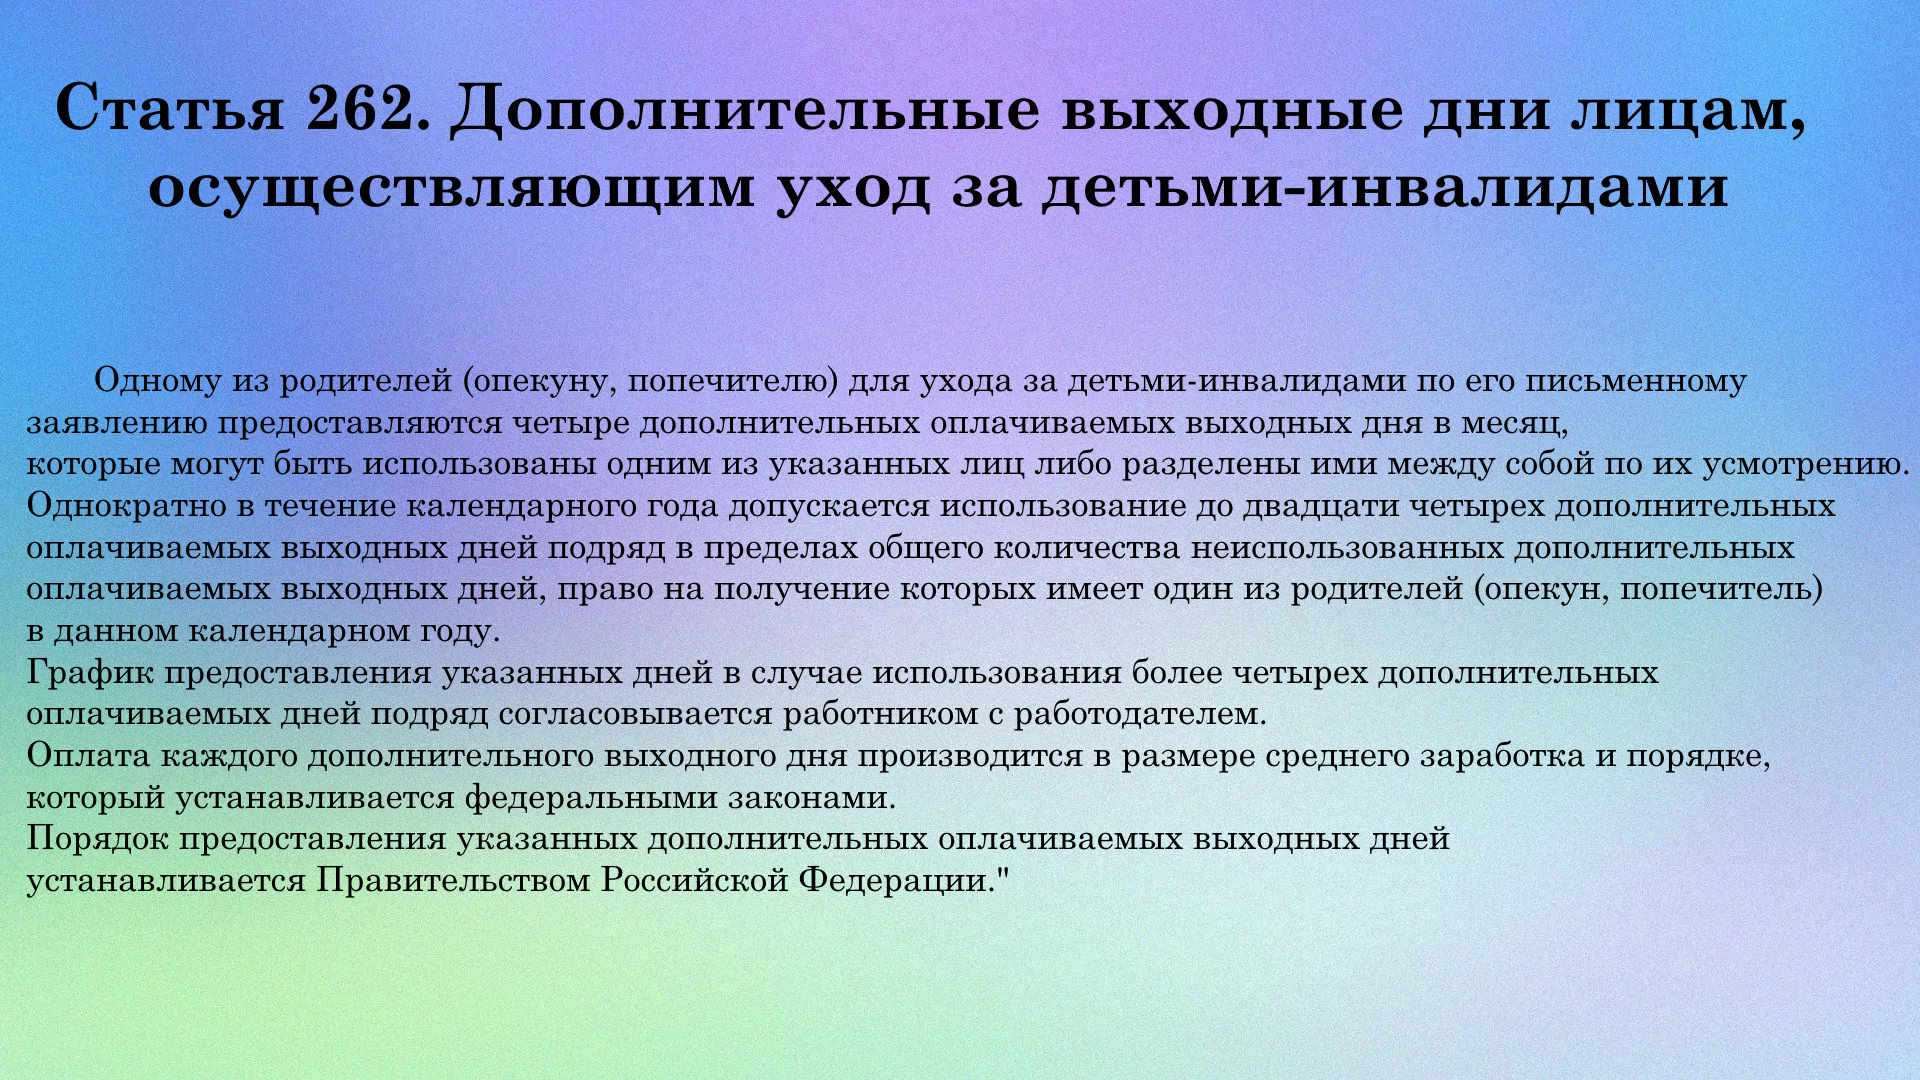 О внесении изменения в статью 262 Трудового кодекса Российской федерации